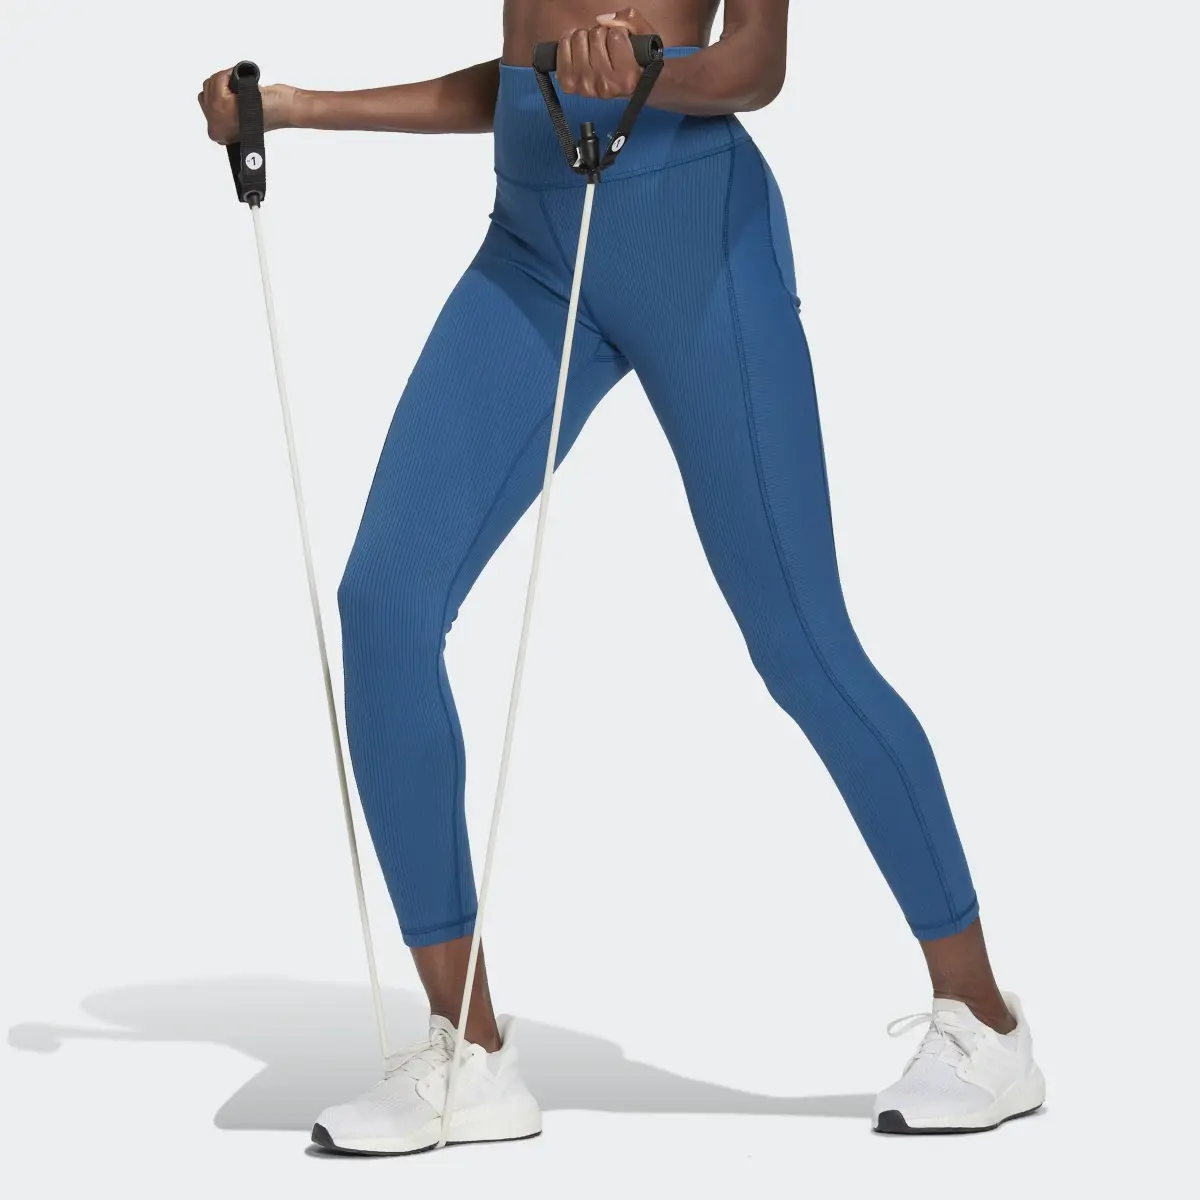 Adidas Leggings Caneladas com Cintura Supersubida para Ioga Luxe Wind. 1